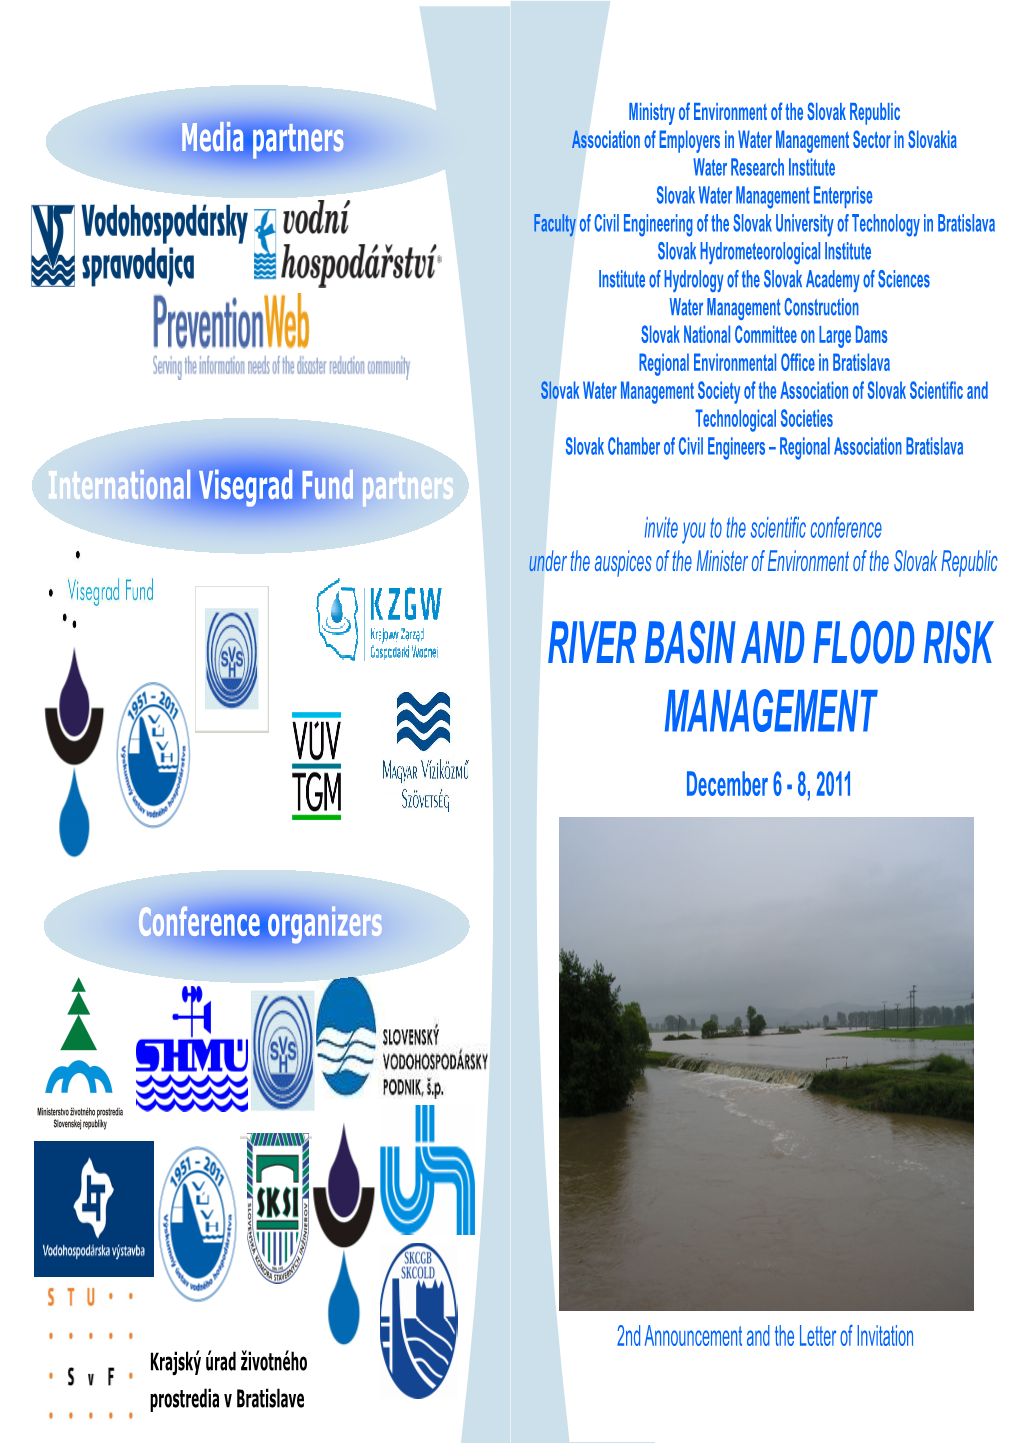 River Basin and Flood Risk Management